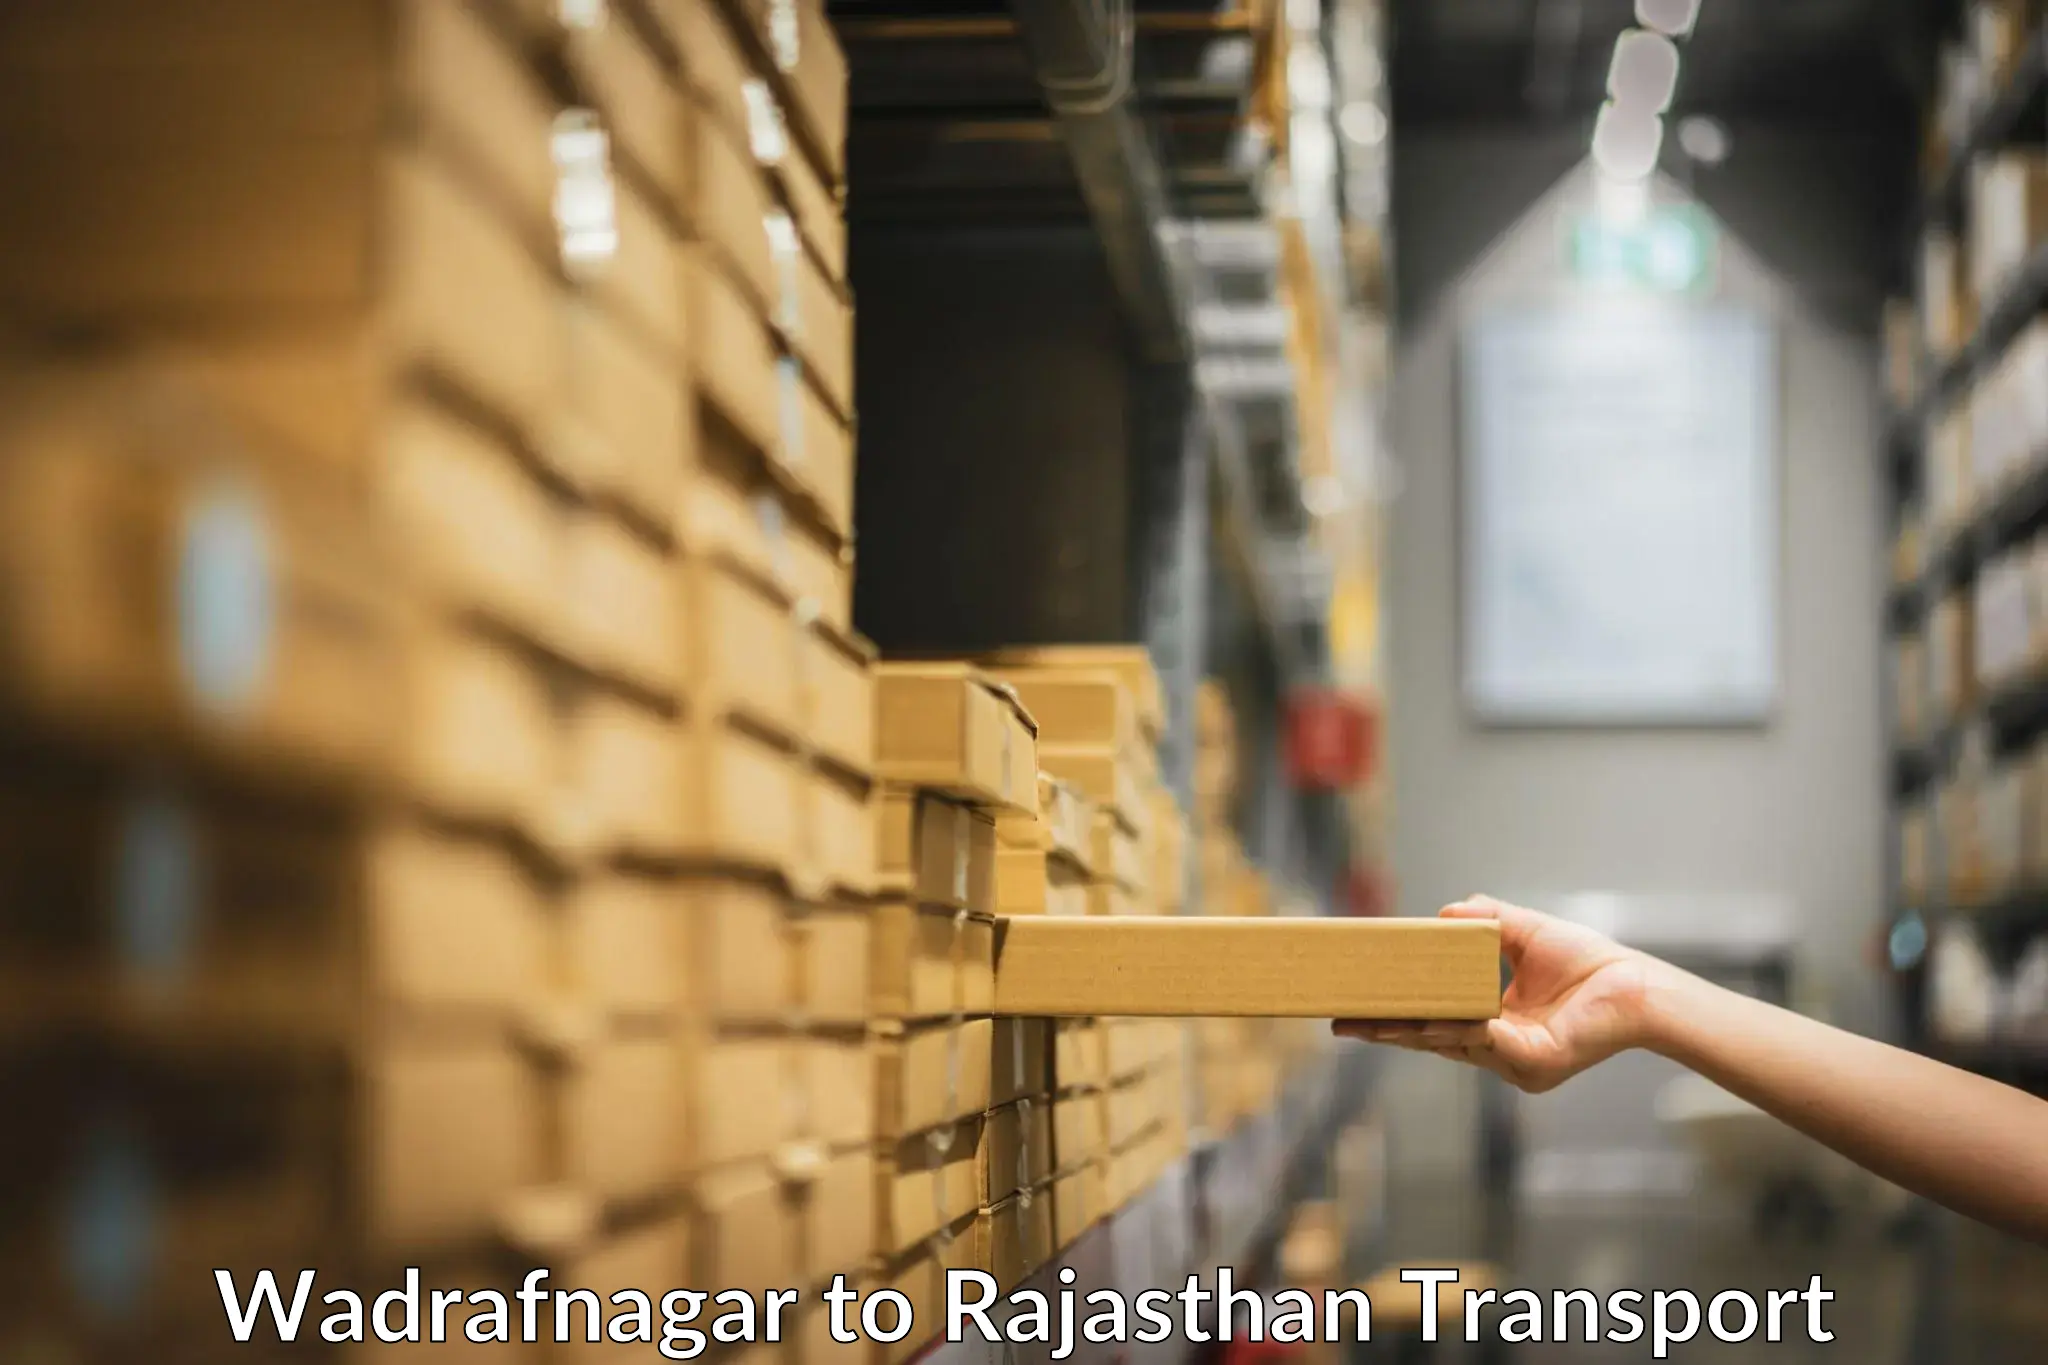 Logistics transportation services Wadrafnagar to Nagar